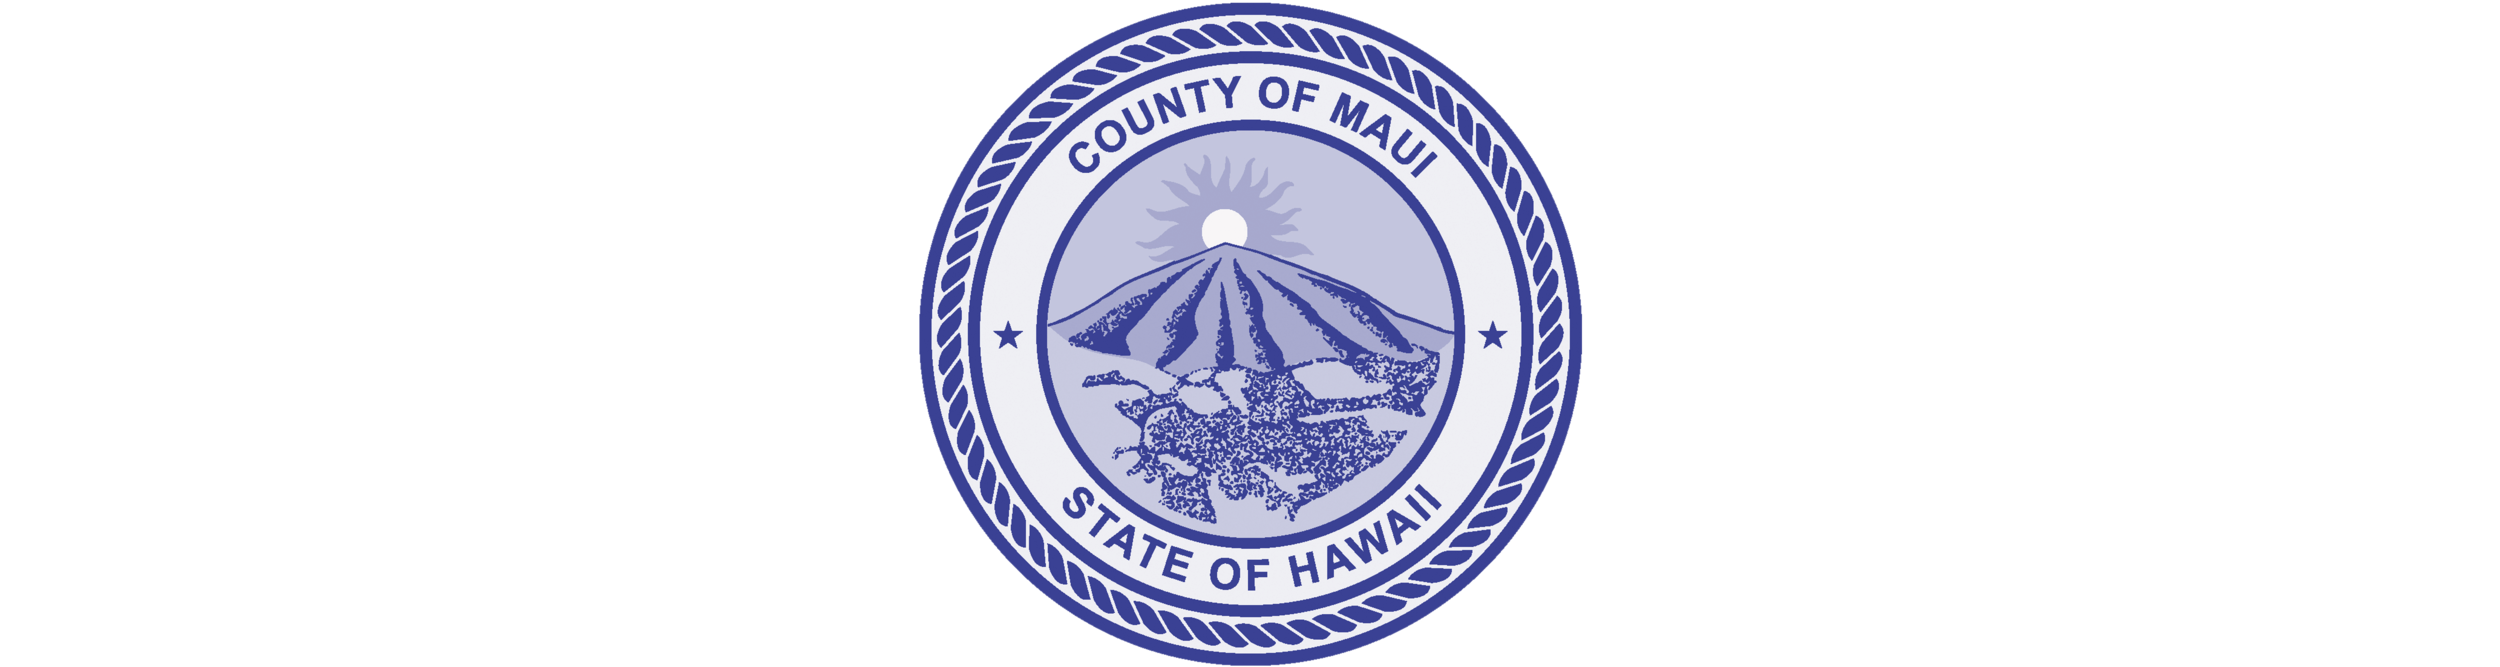 HPHA-waiwai-logo-Maui-County.png